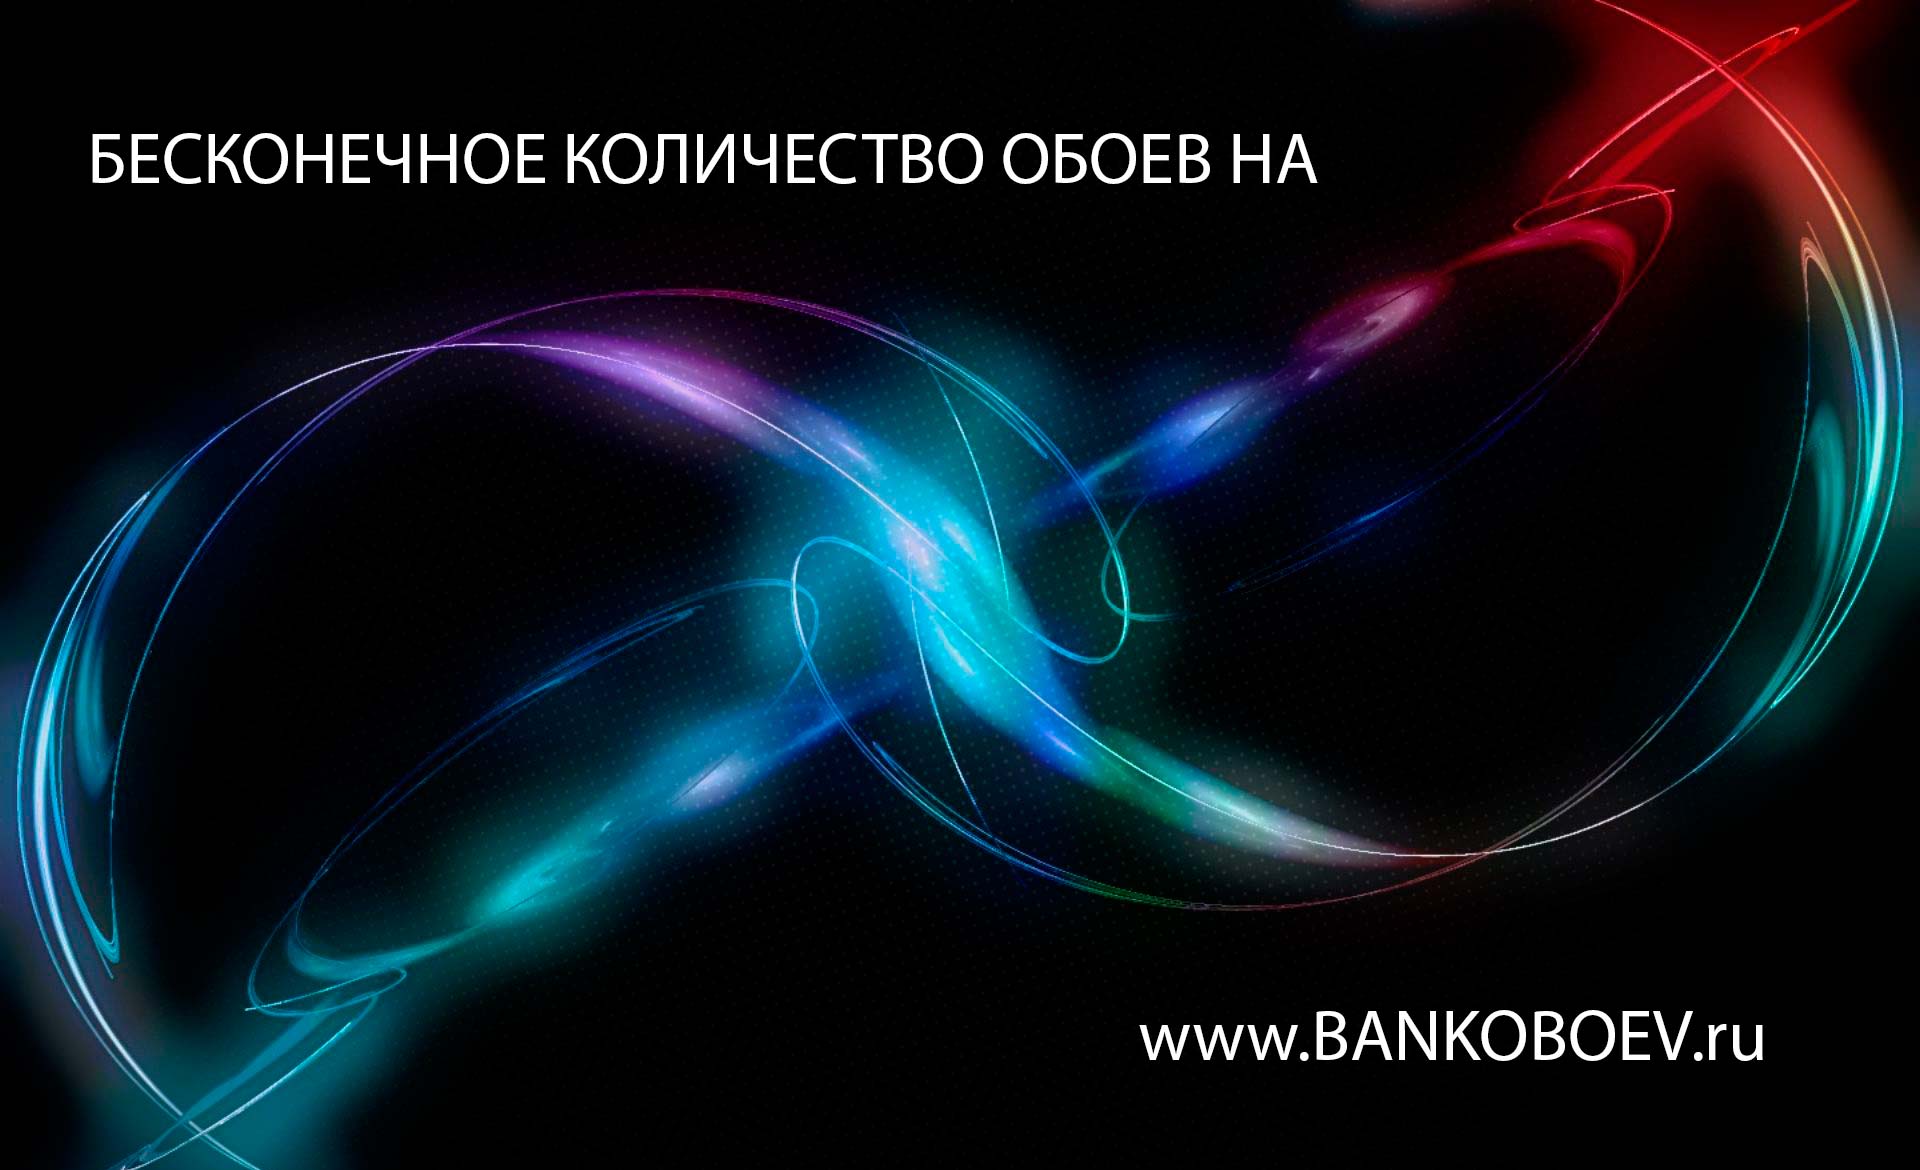 Source Bankoboev Ru Image Mtmynzc4